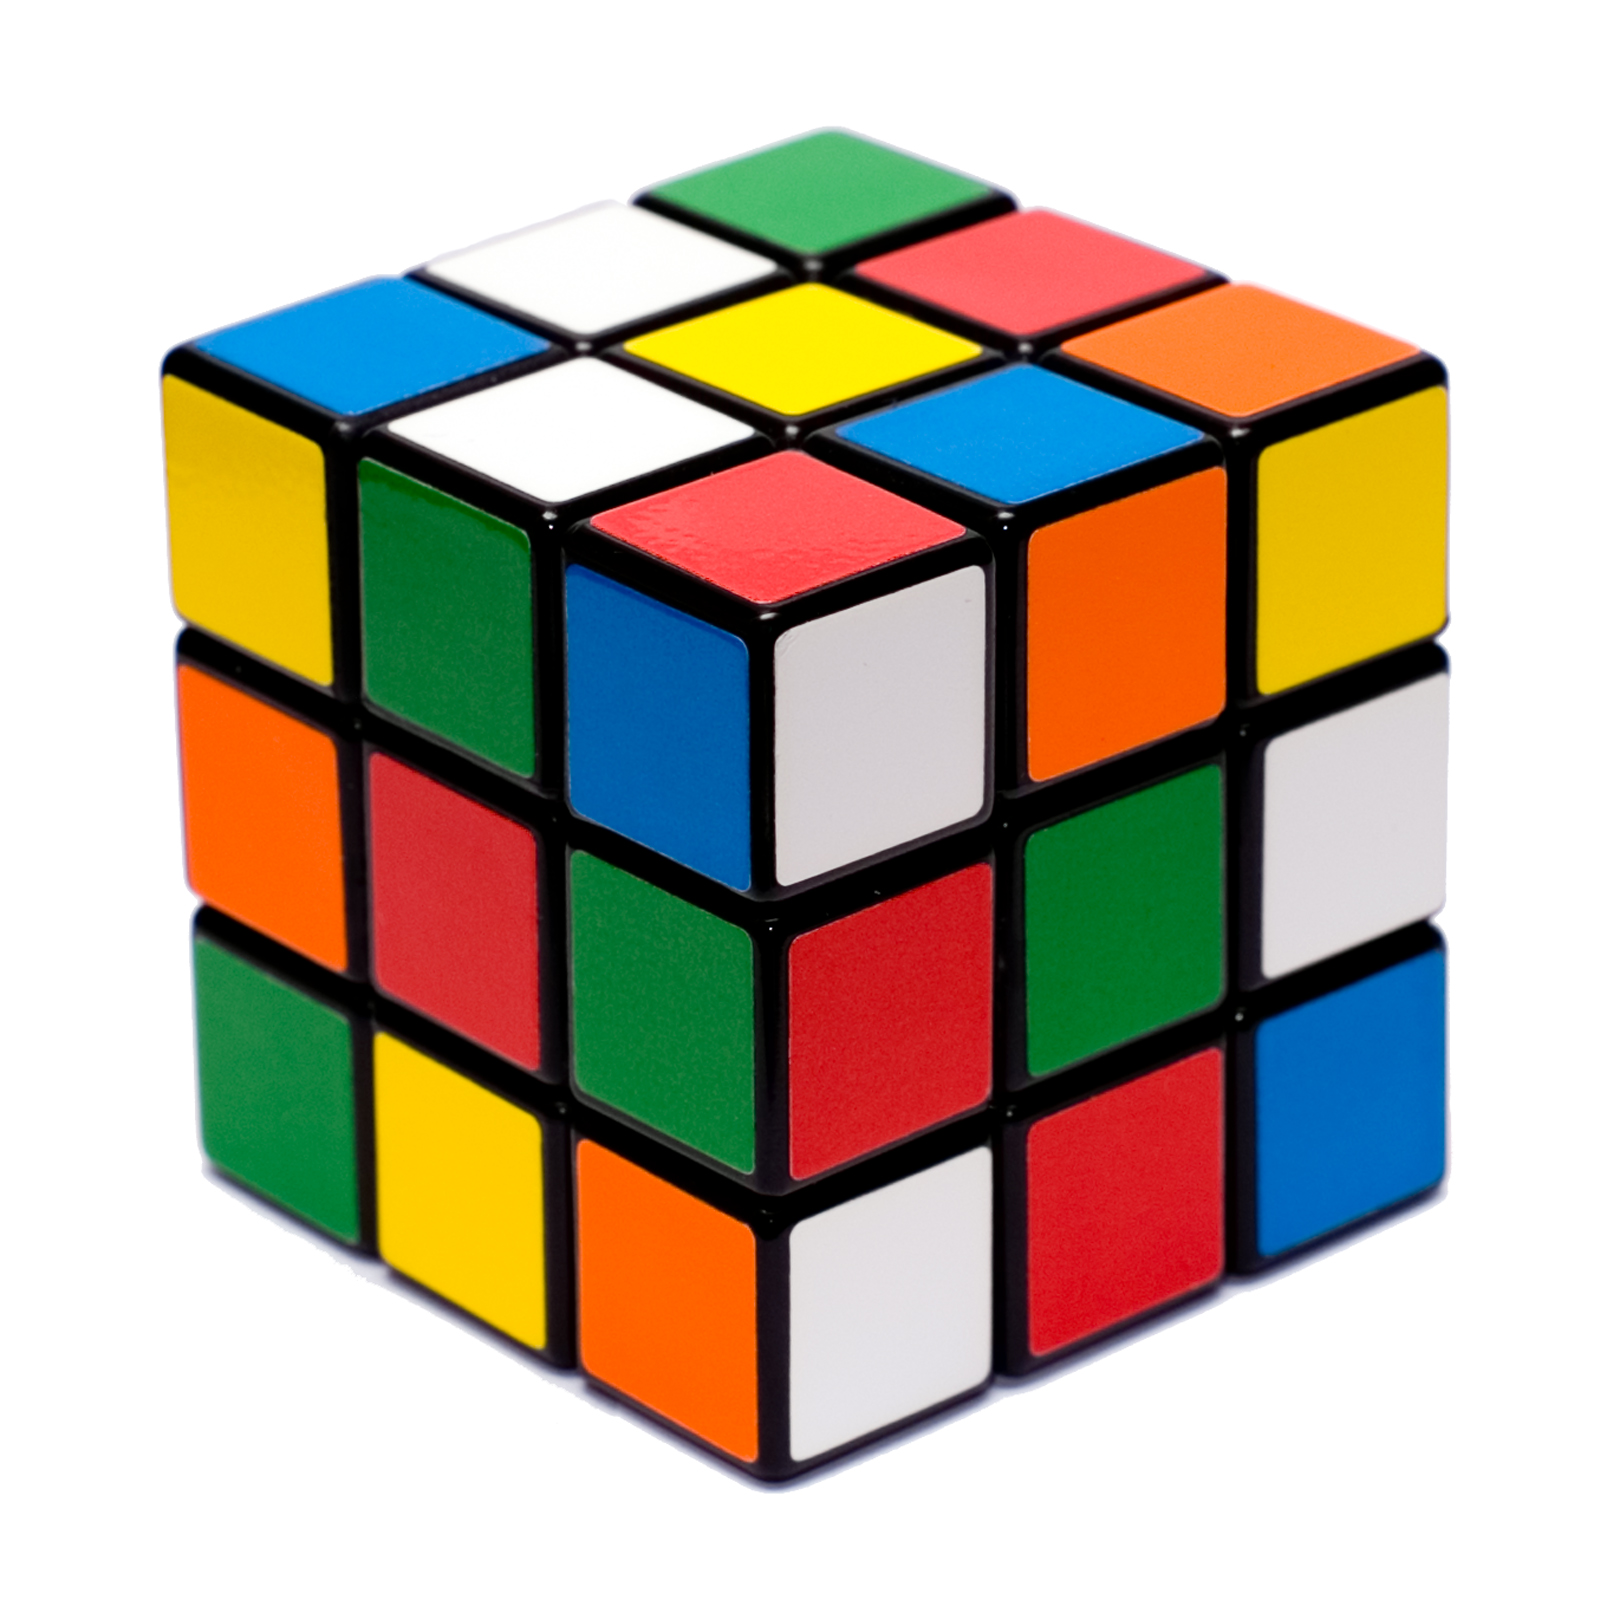 cube of rubik